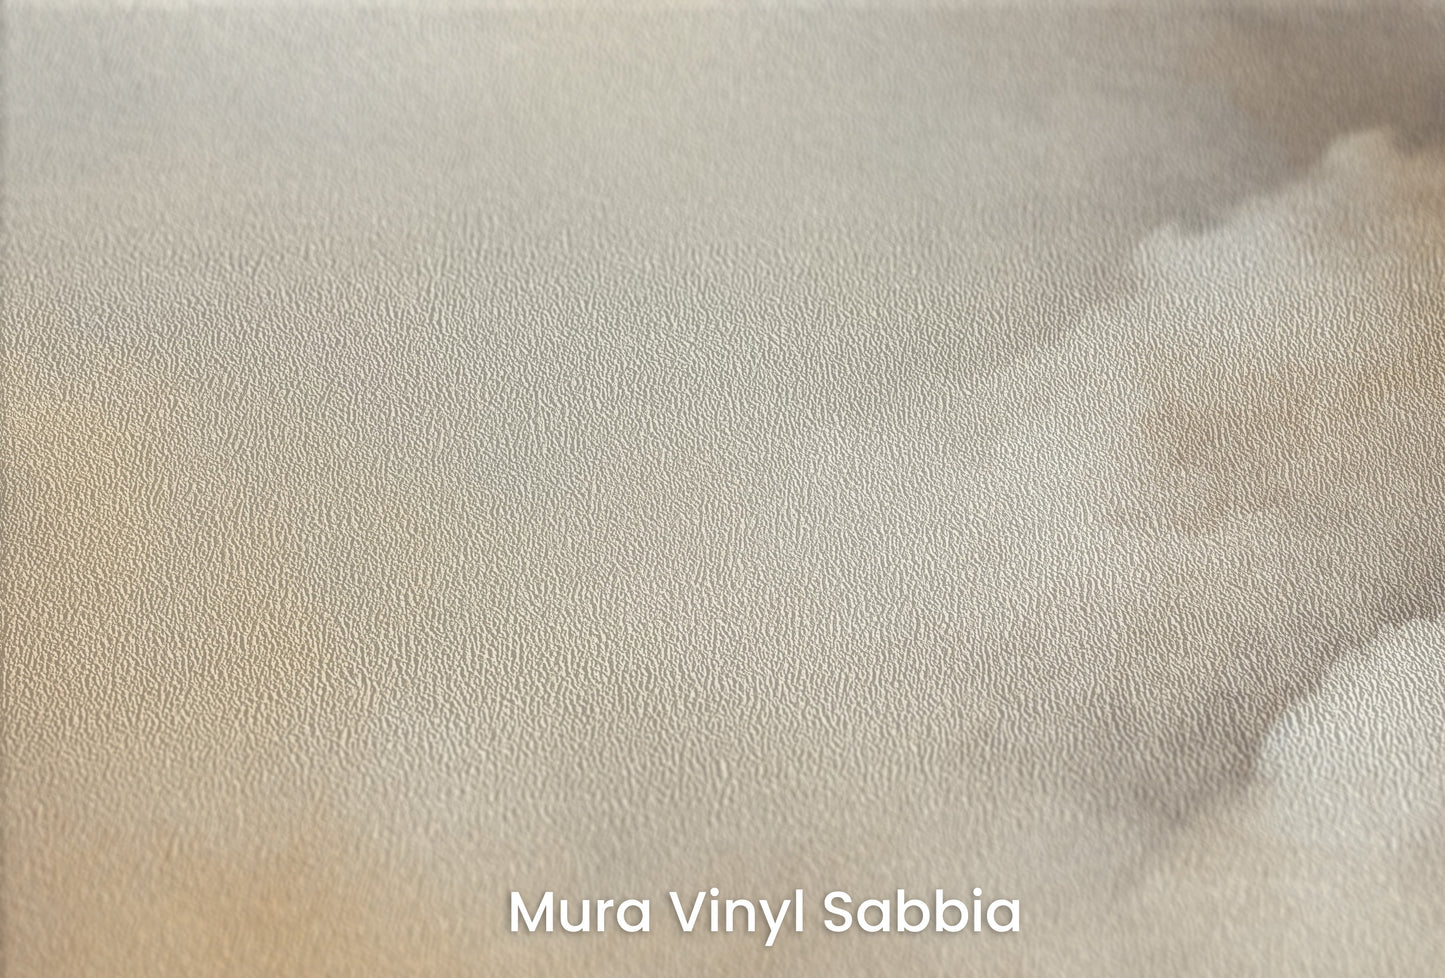 Zbliżenie na artystyczną fototapetę o nazwie LUMINOUS DREAMSCAPE HORIZON na podłożu Mura Vinyl Sabbia struktura grubego ziarna piasku.